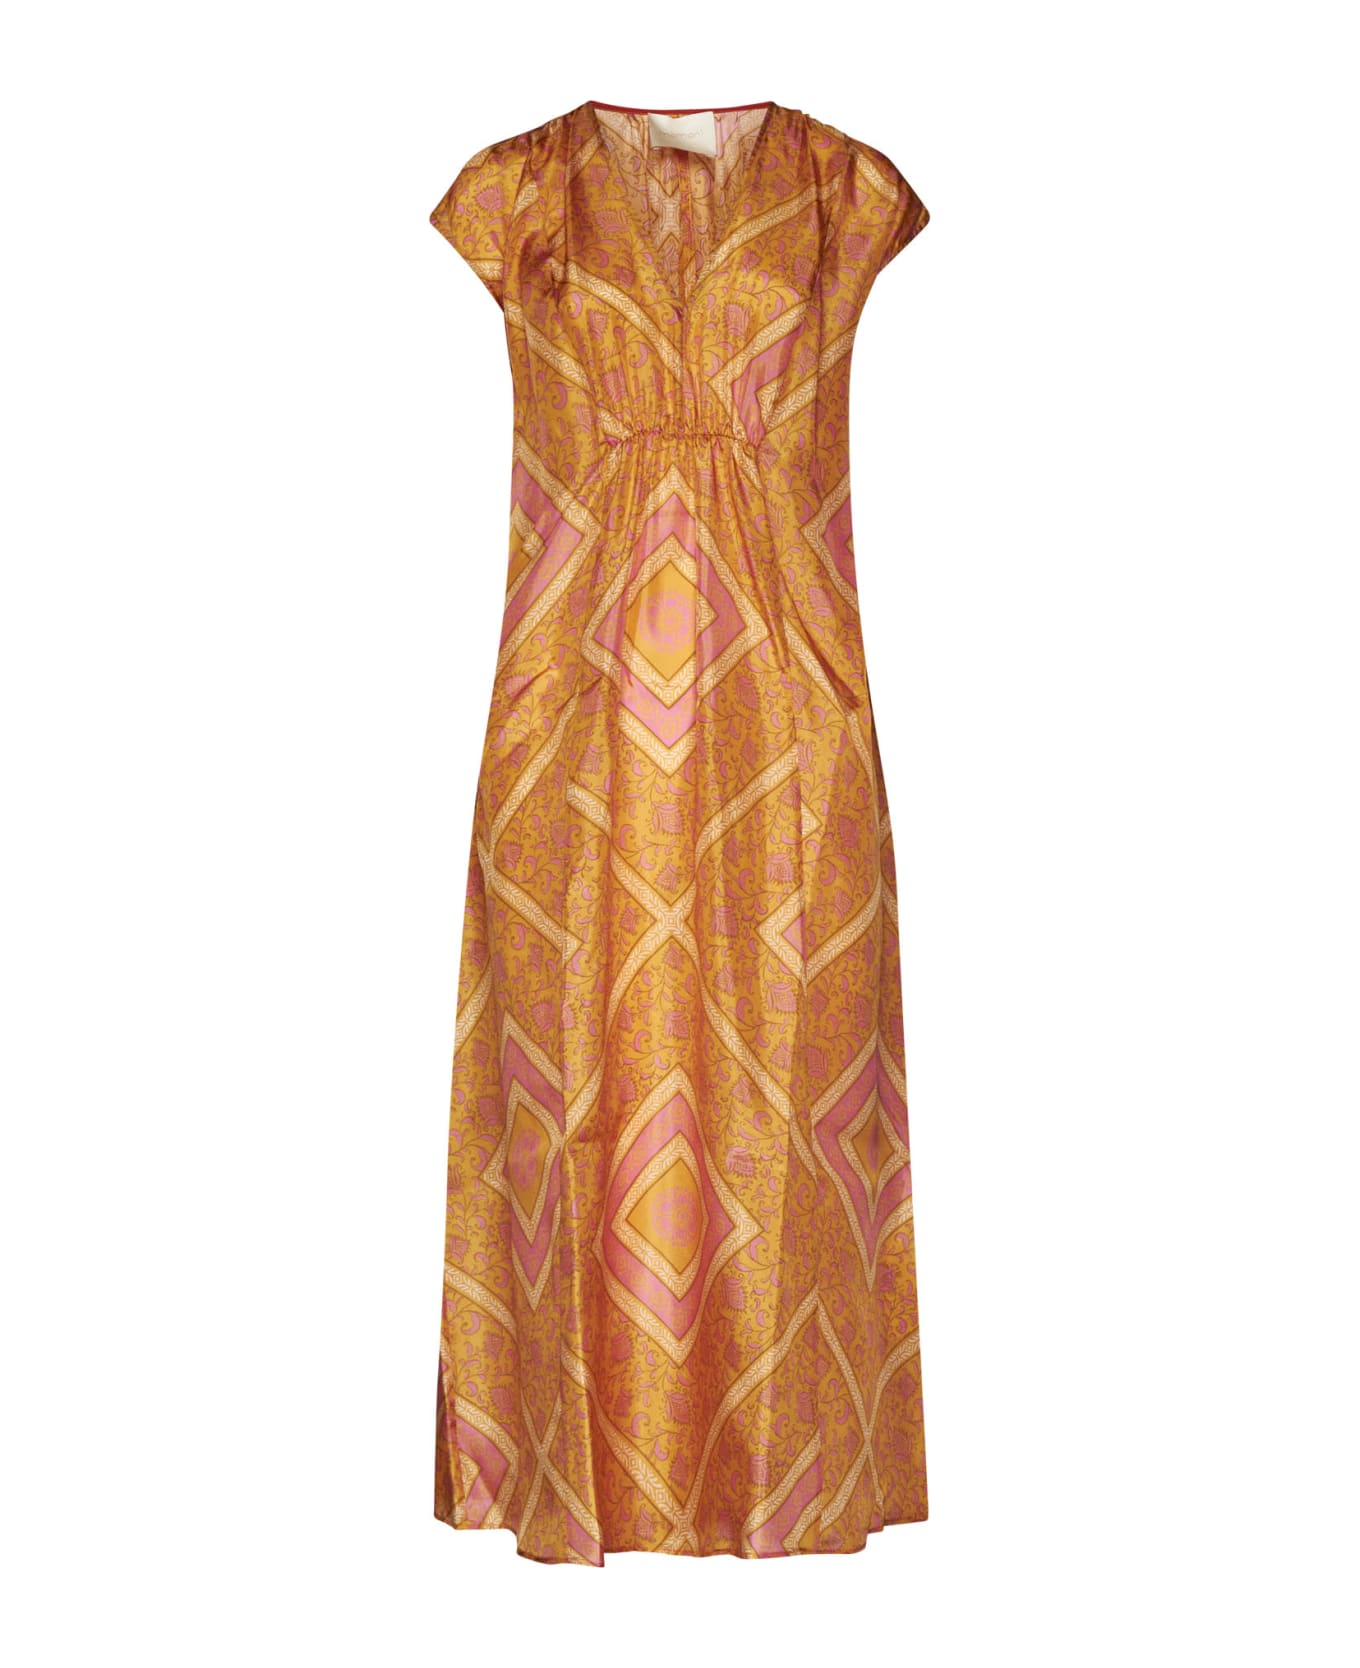 Momonì Dress - Arancio/fucsia